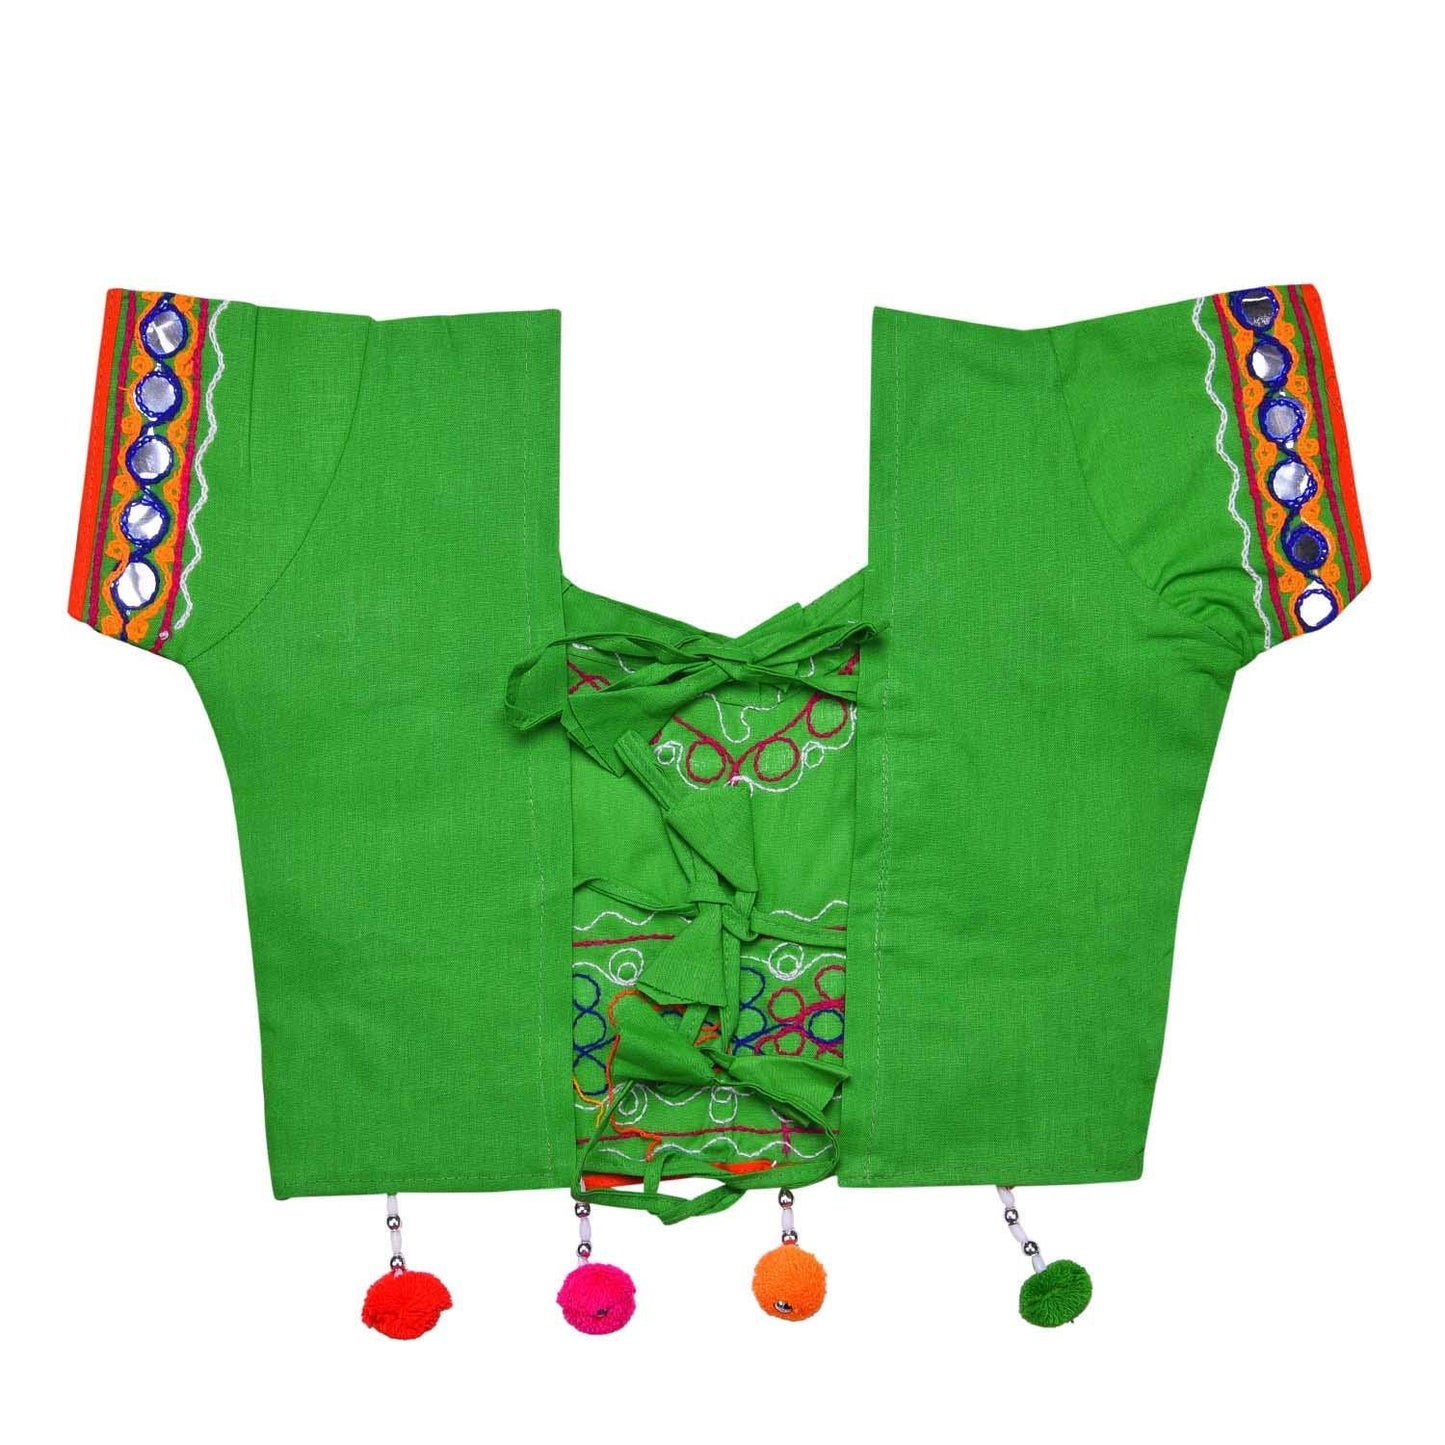 Girl's Cotton Ghaghra Choli, Leghnga Choli, Chania Choli 144g -  Wish Karo Dresses